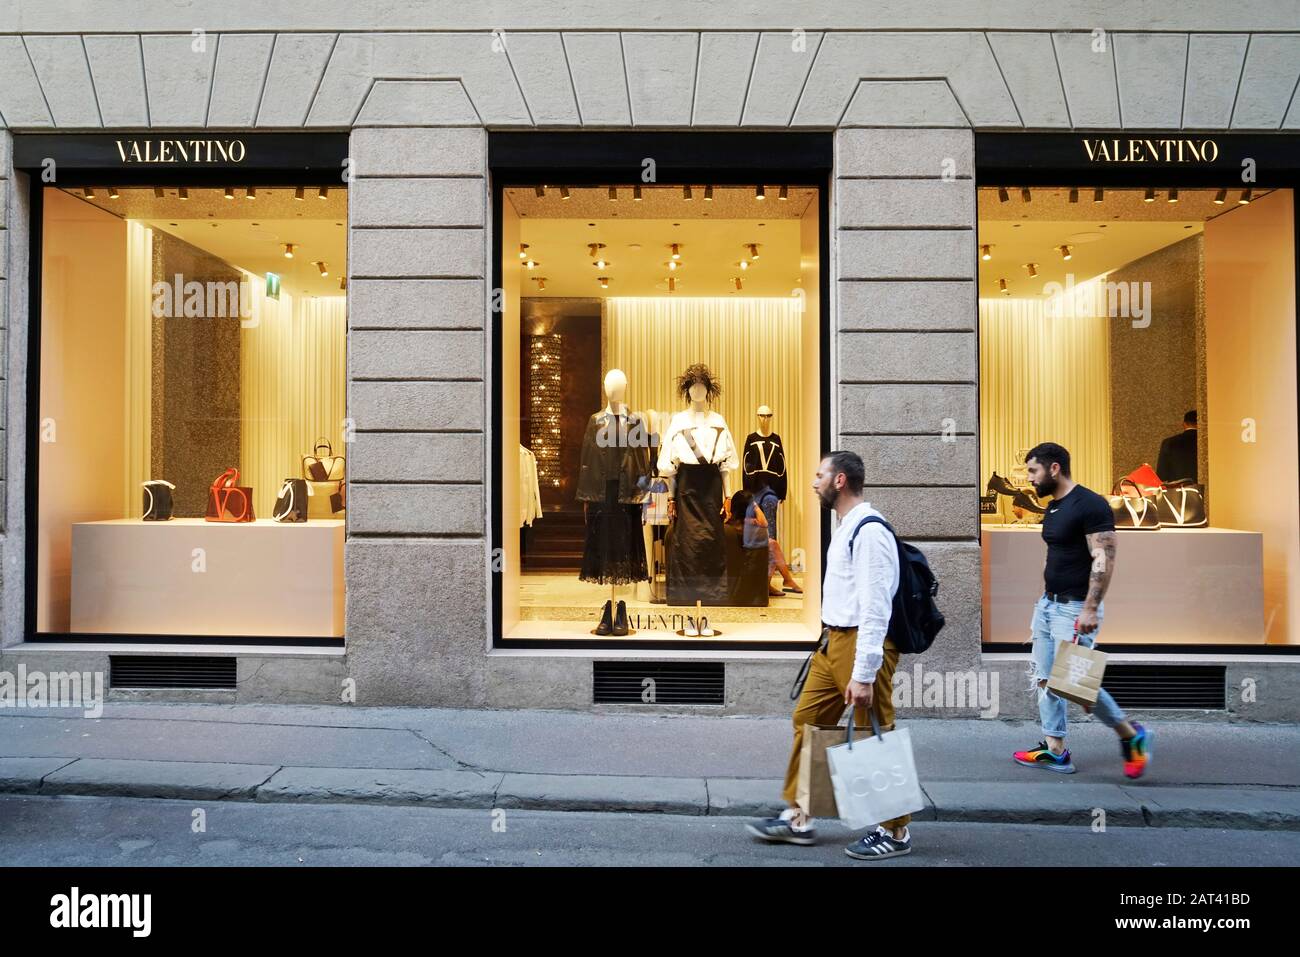 Valentino Store, Via Monte Napoleone, 20, Quadrilatero moda, fashion square or Via Montenapoleone district, Milan, Lombardy, Italy, Euro Stock Photo -